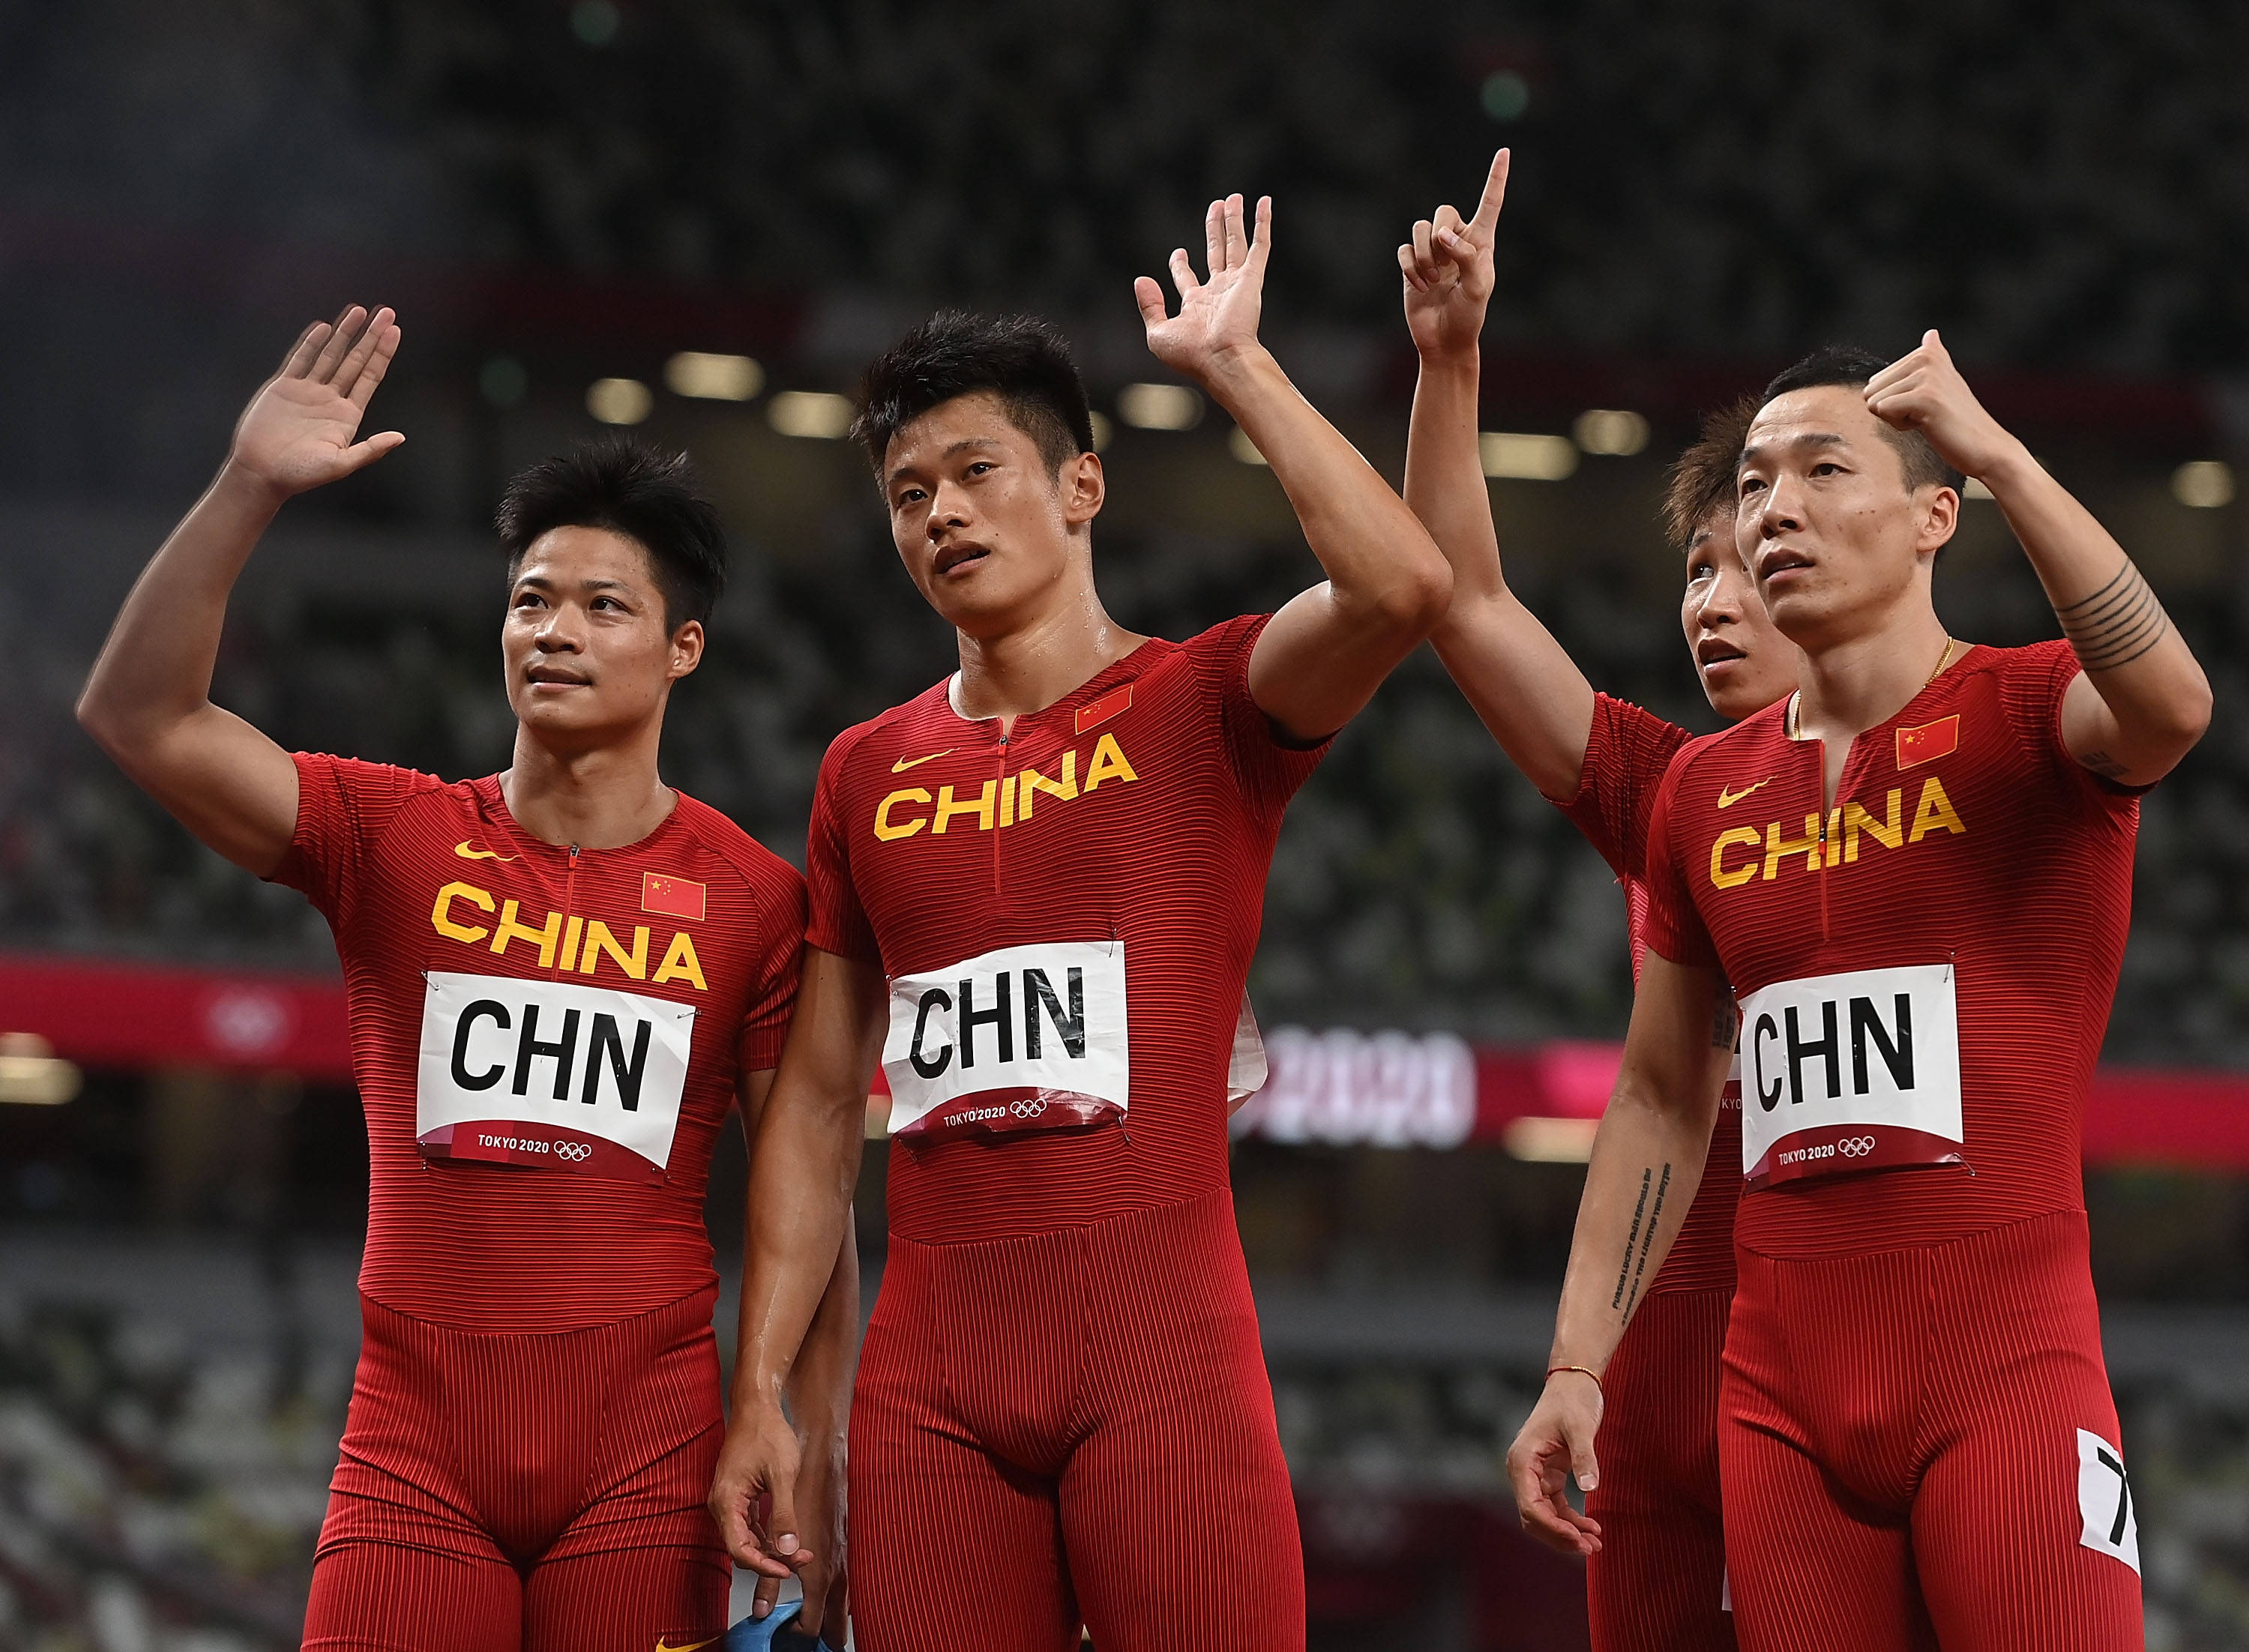 国际奥委会官宣:中国田径男子4x100米接力队获奥运铜牌